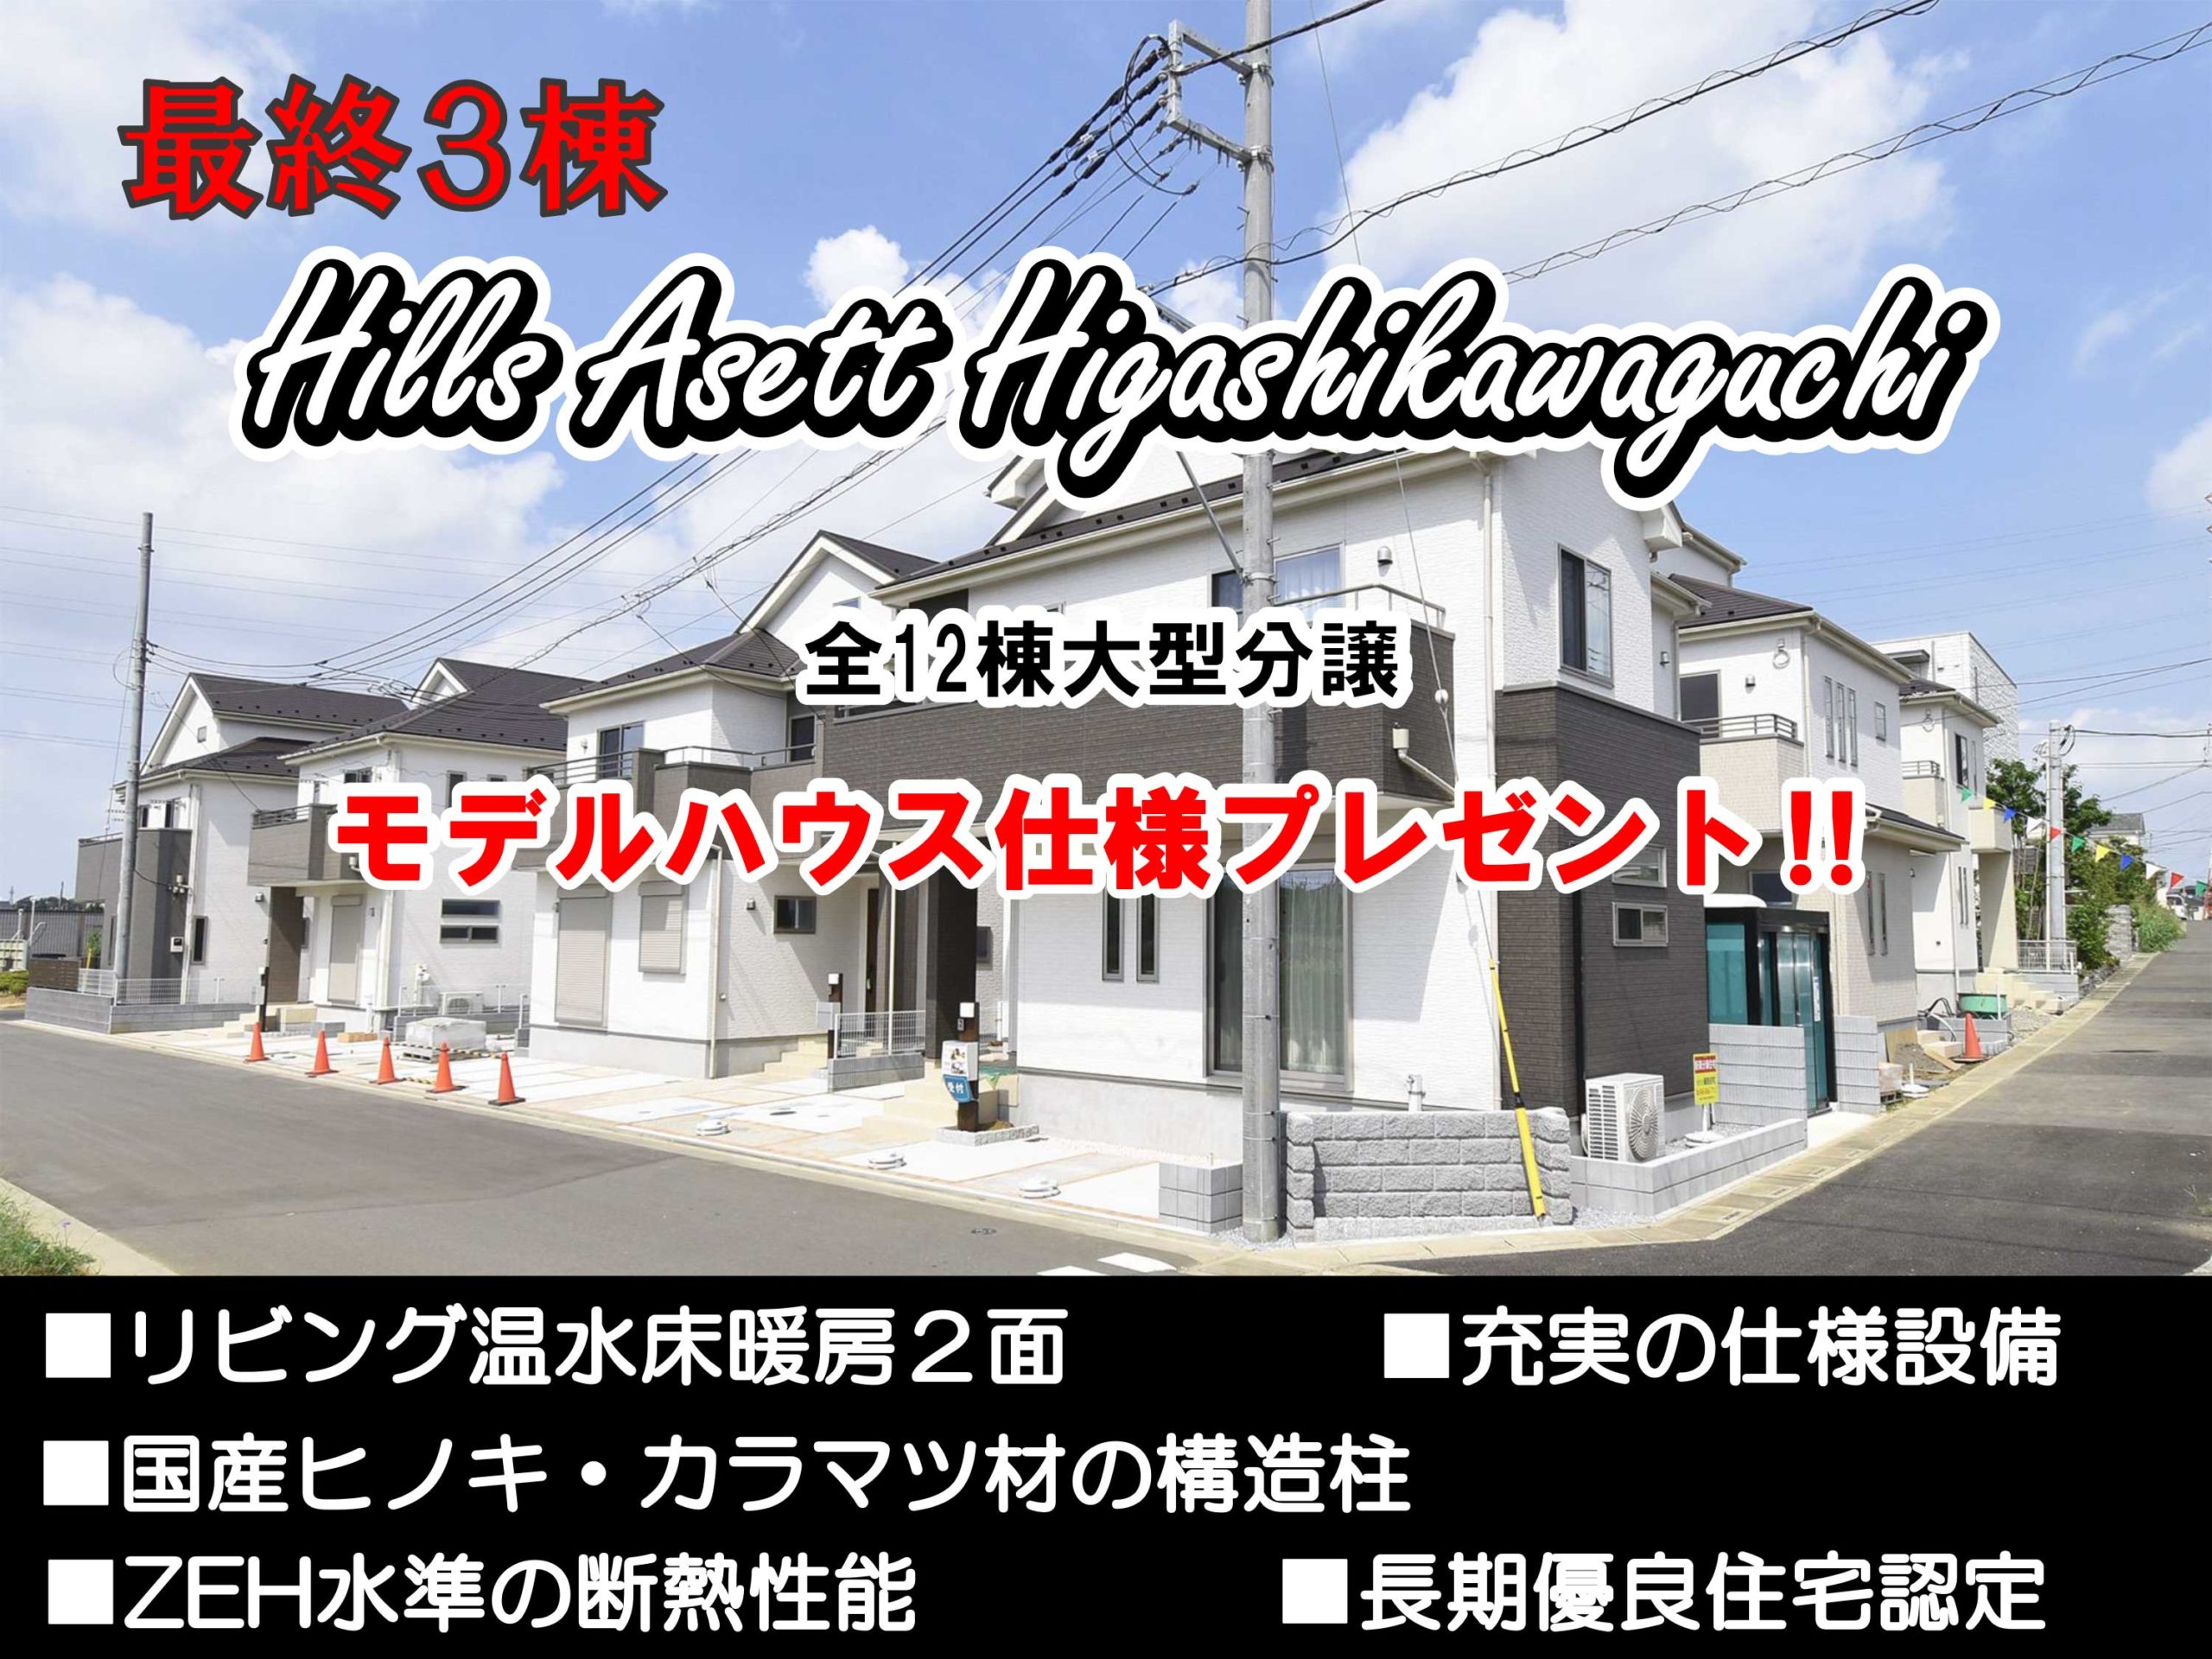 アイキャッチHills-Asett-Higashikawaguchi-45daimon